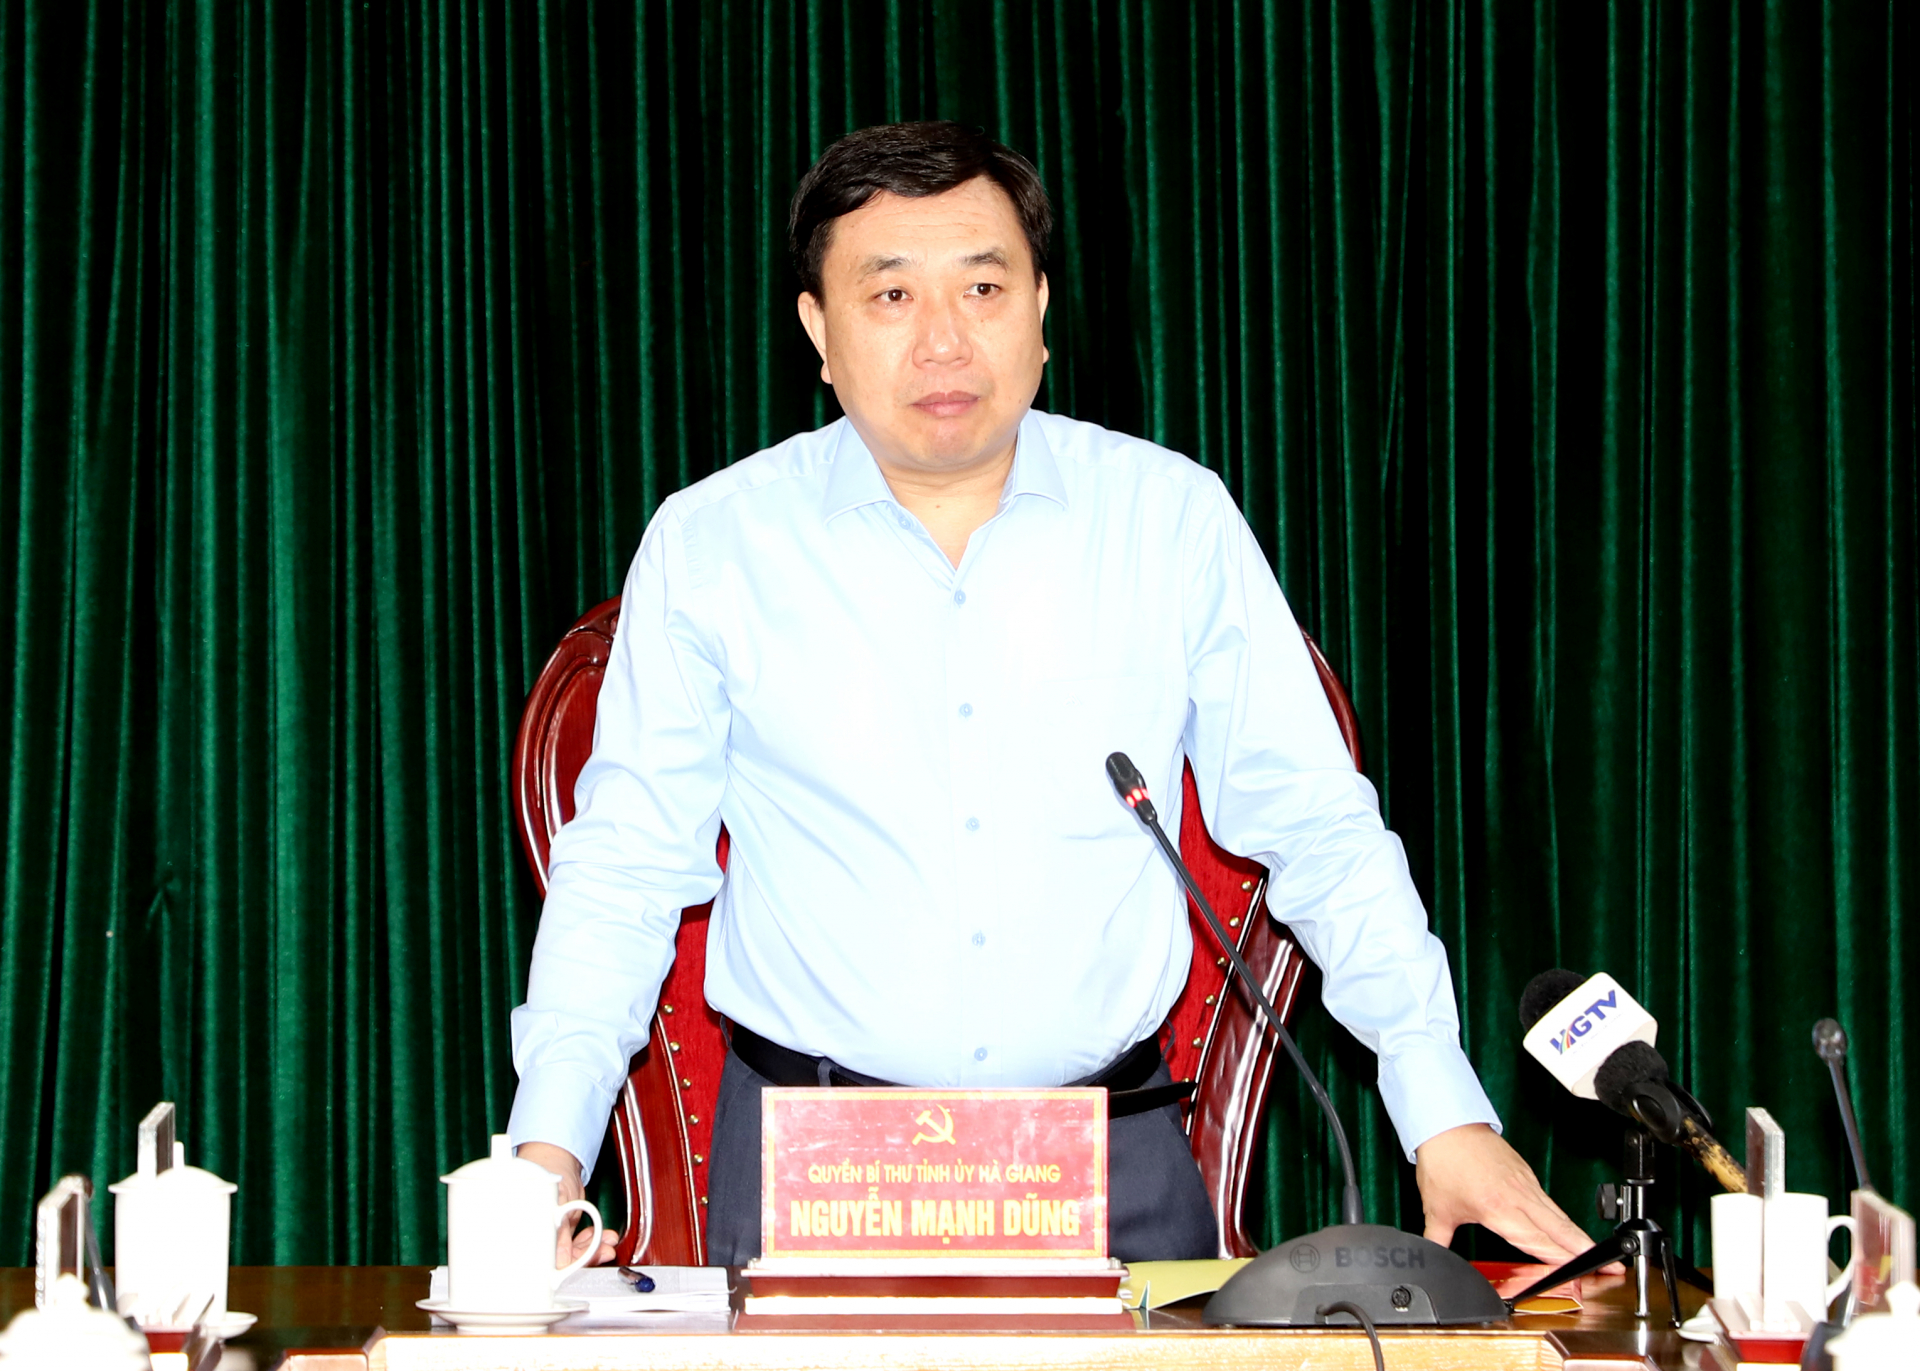 Quyền Bí thư Tỉnh ủy Nguyễn Mạnh Dũng phát biểu kết luận buổi làm việc